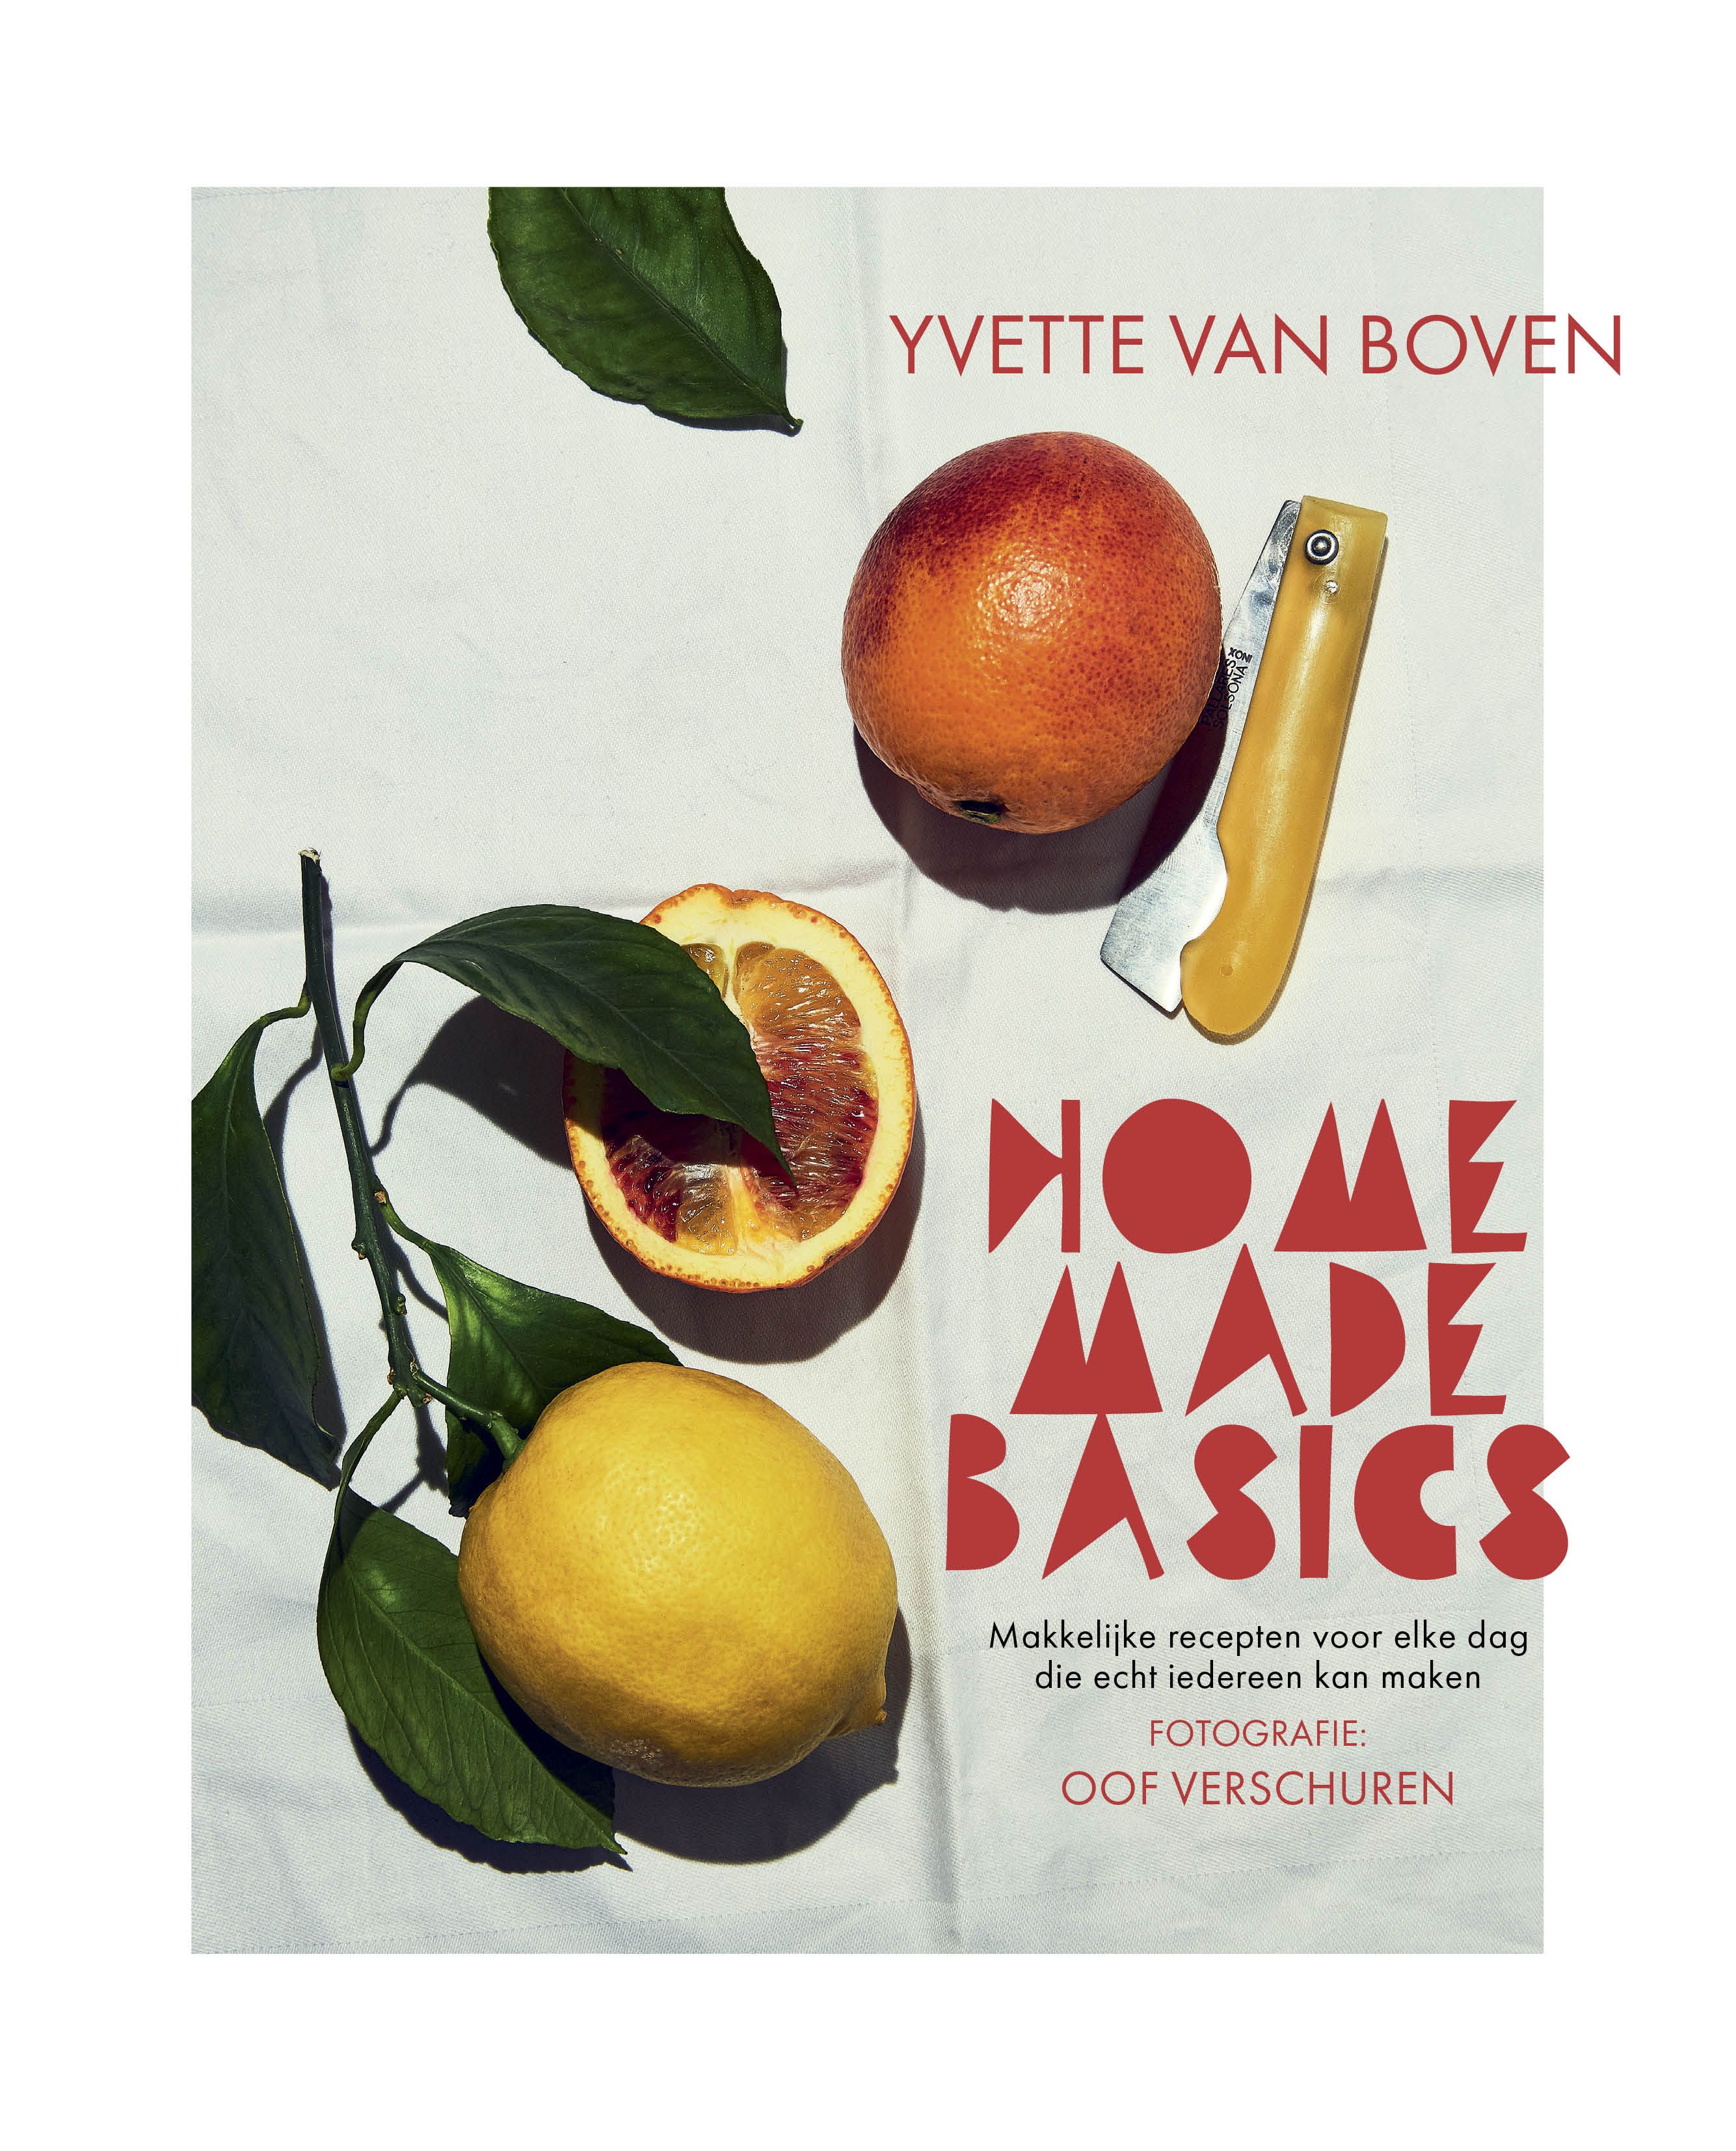 Kookboeken - Boven, Yvette van - Home made basics